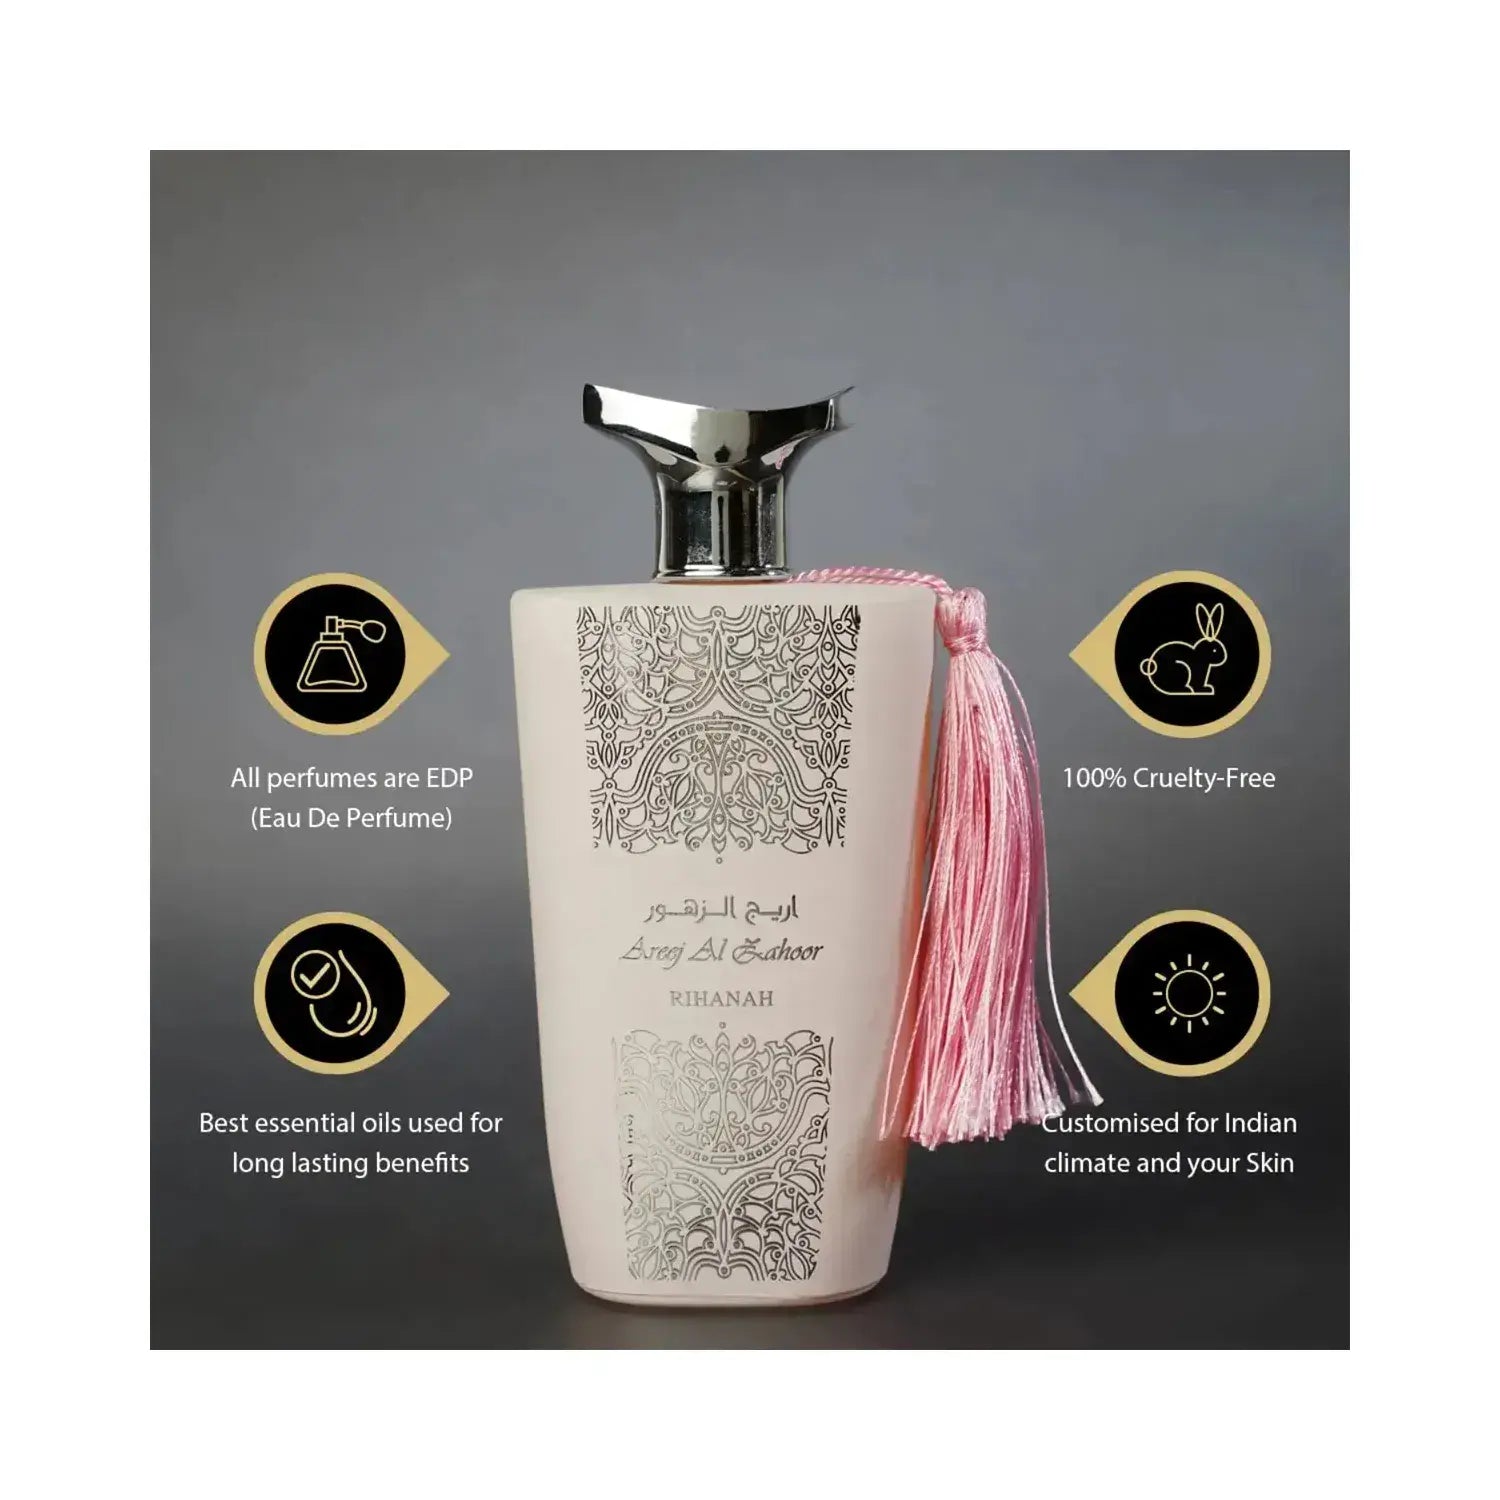 RIHANAH Areej Al Zahoor Perfume Eau de Parfum - 100 ml